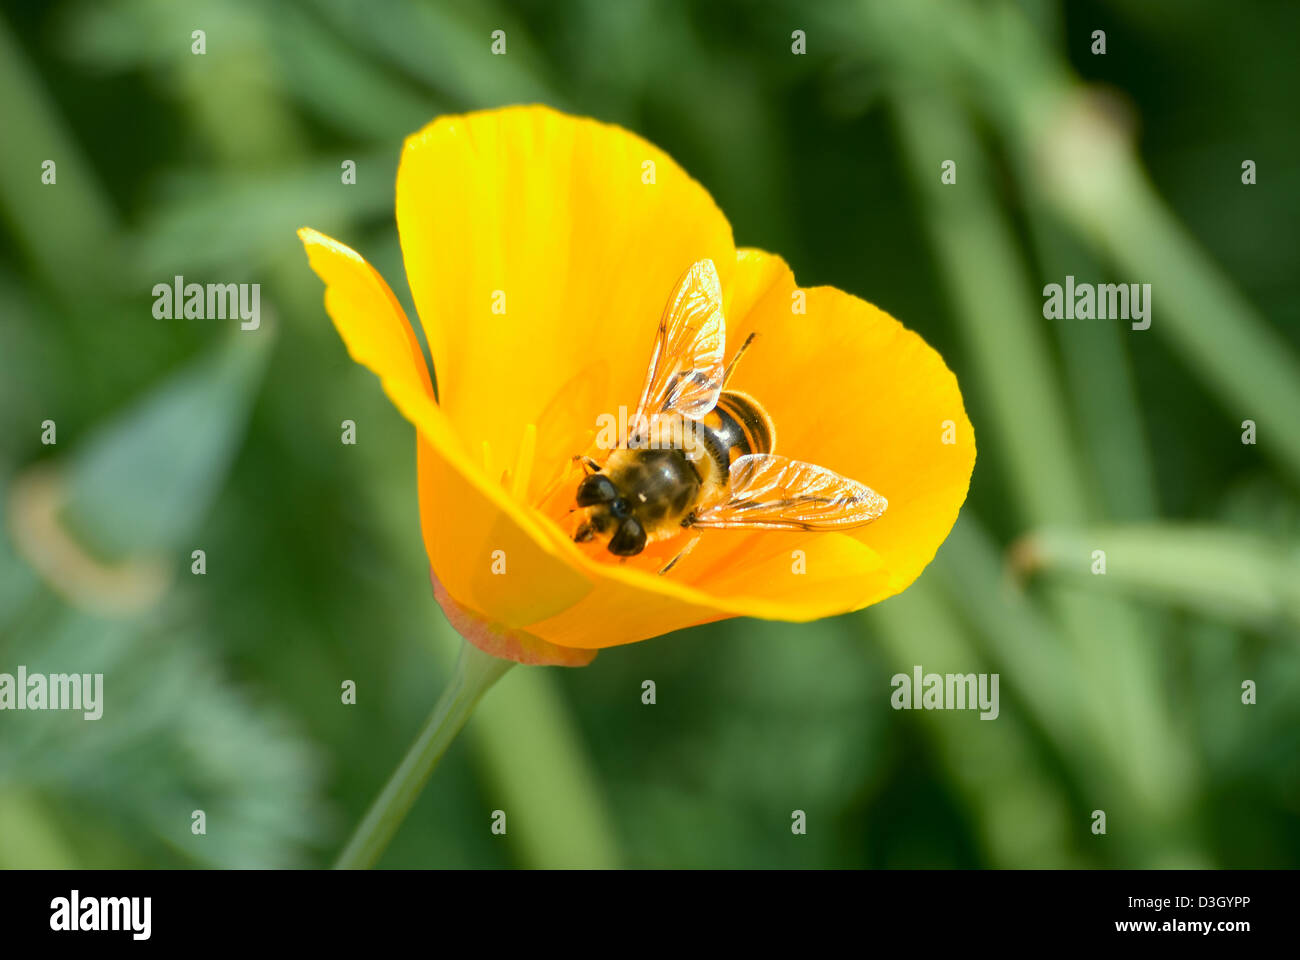 La abeja recoge el néctar de una flor amarilla Foto de stock